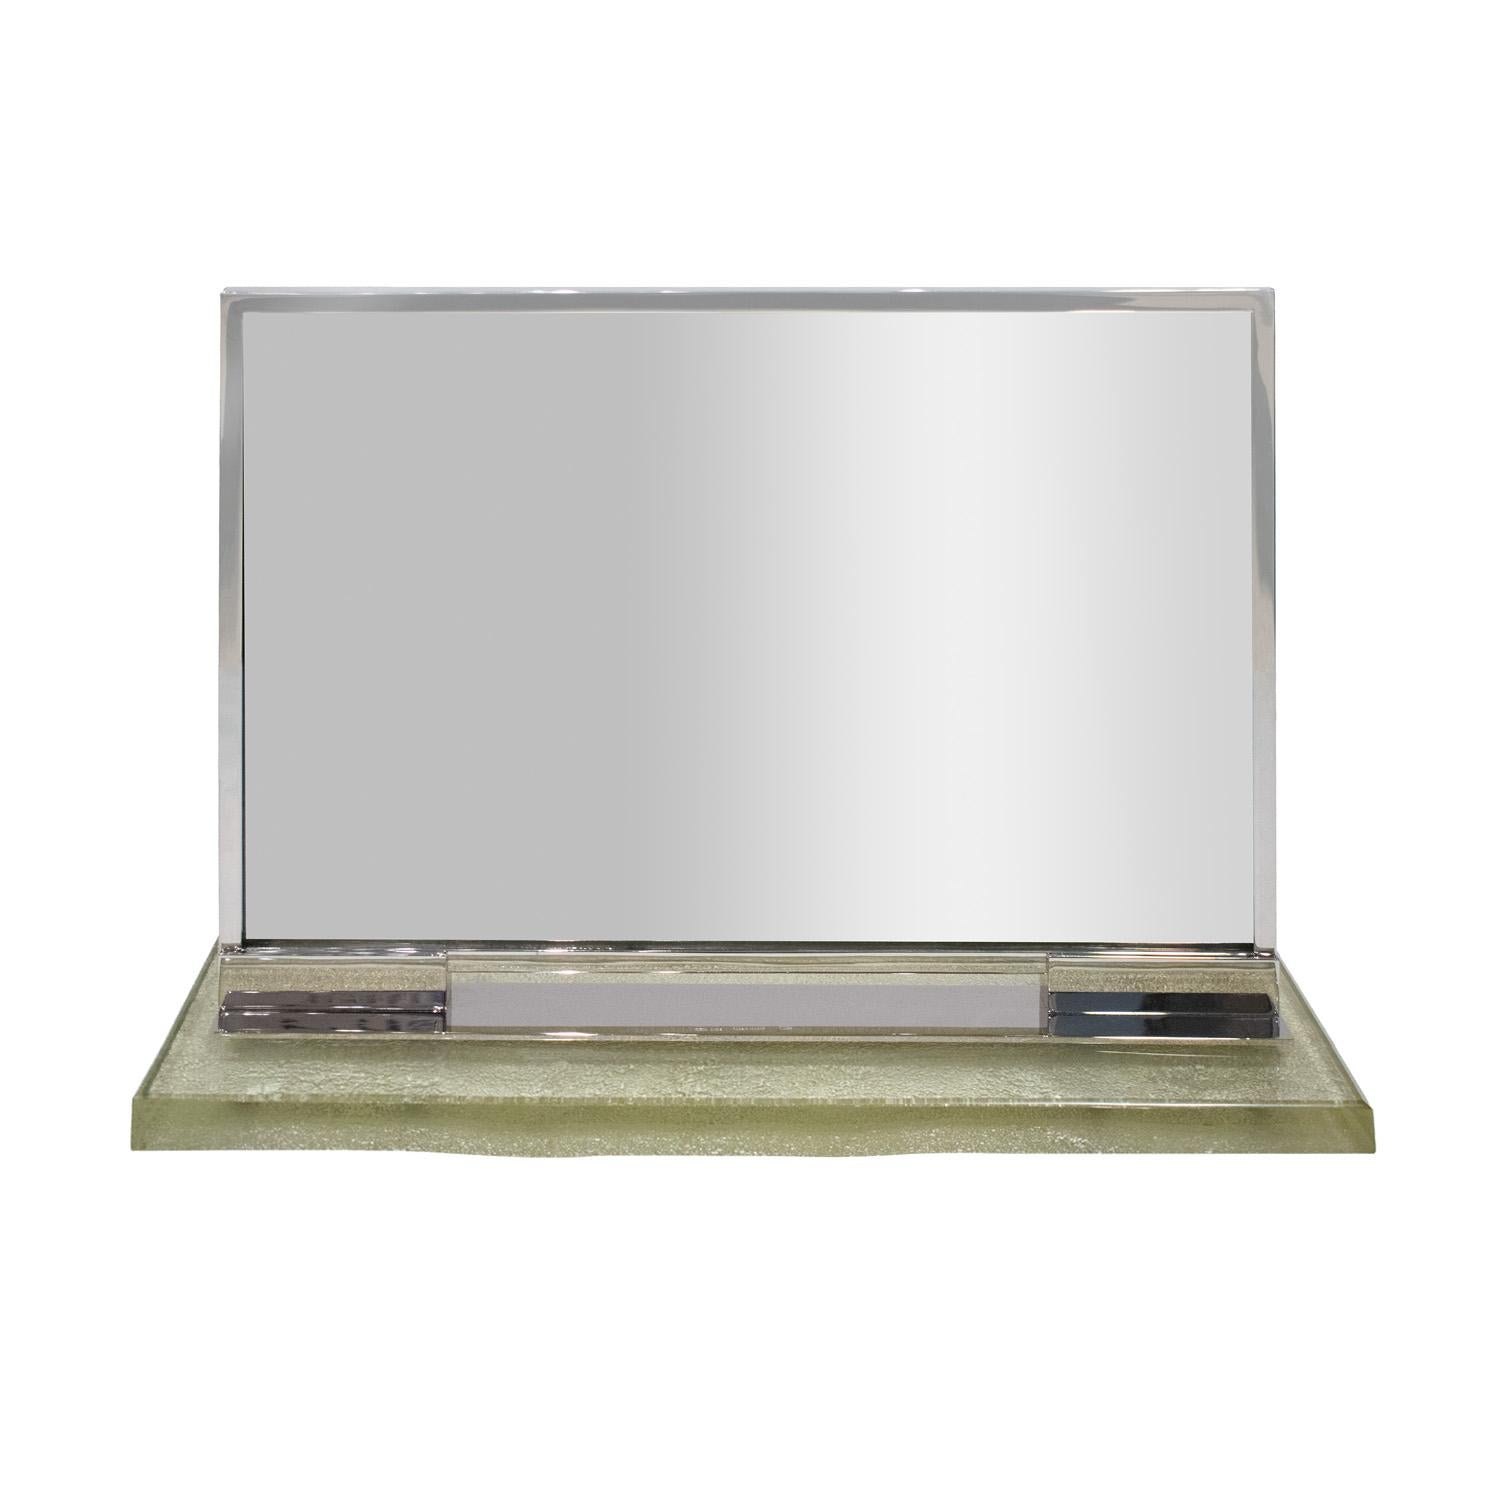 Rare et important miroir de courtoisie en métal argenté avec une épaisse base en verre par la Maison Desny Paris (1927-1933) ca. 1930 (Signé 